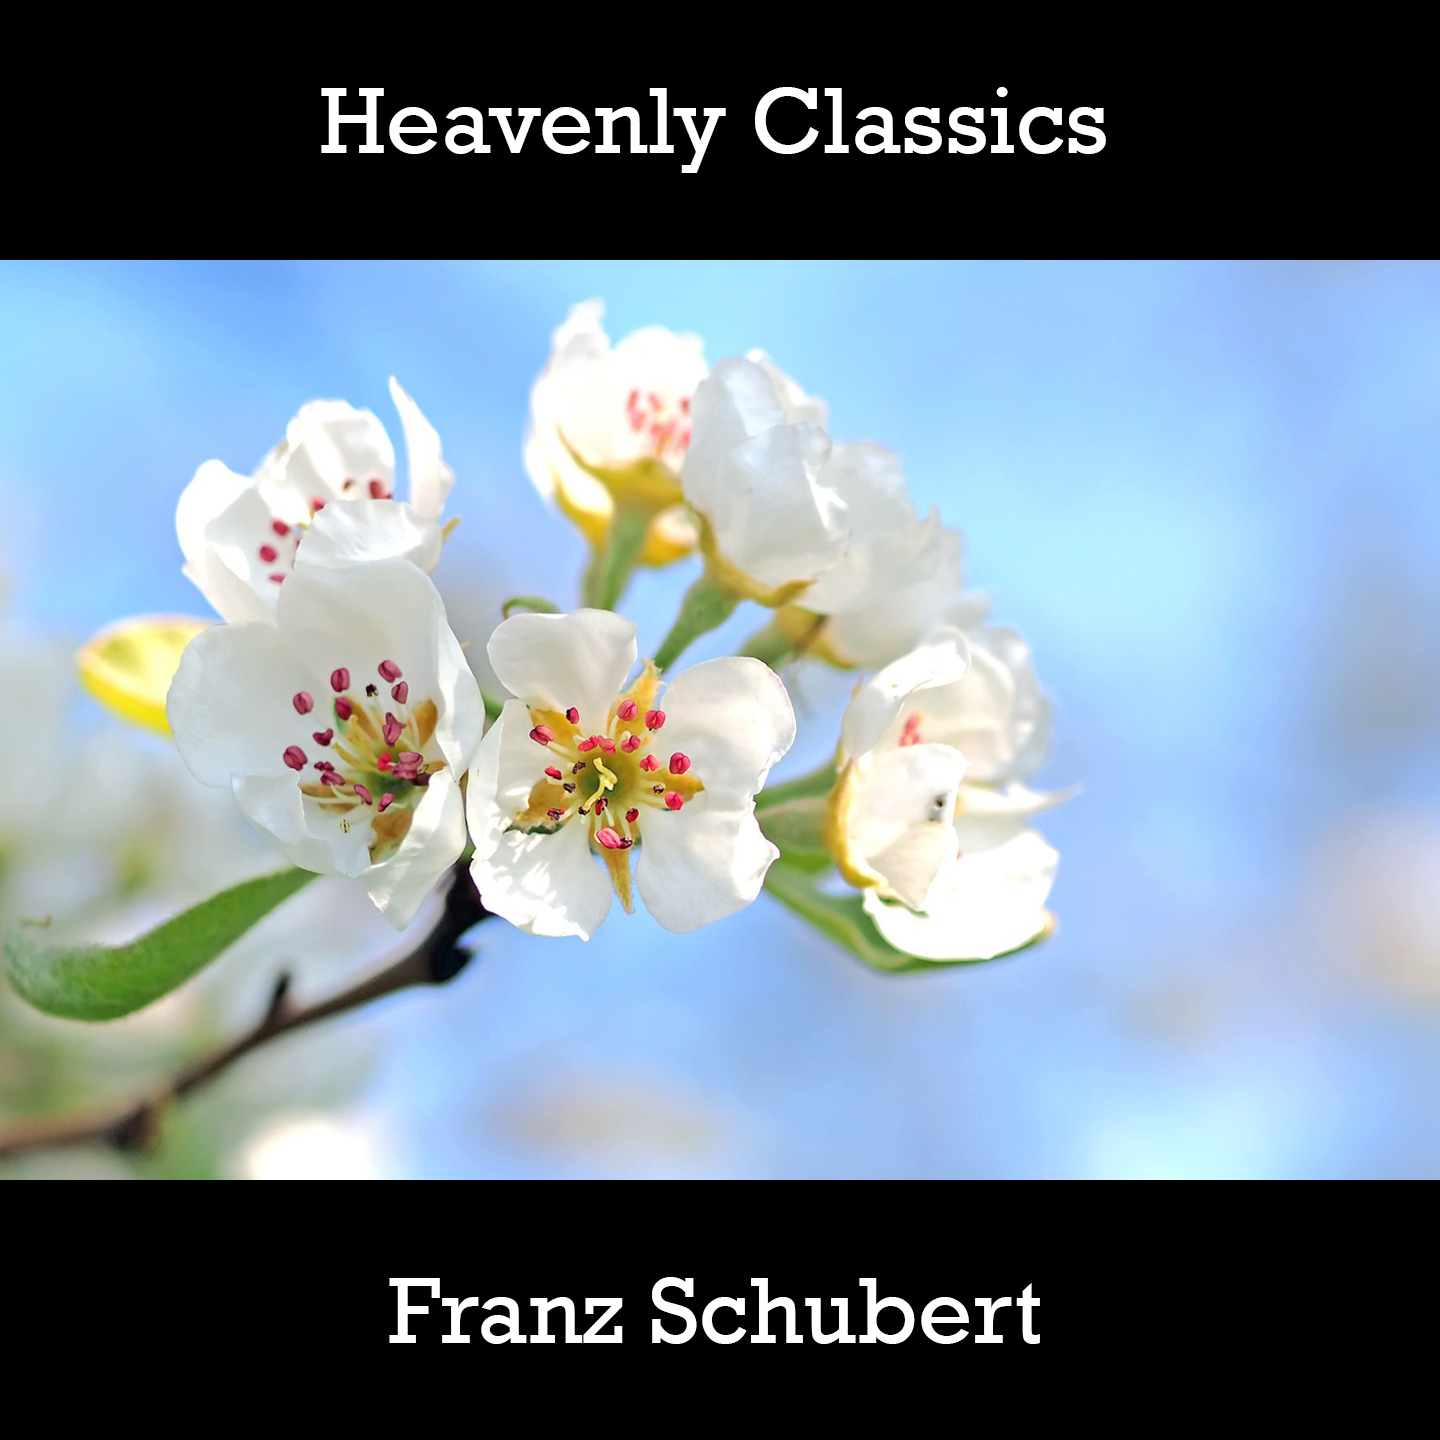 Heavenly Classics Franz Schubert